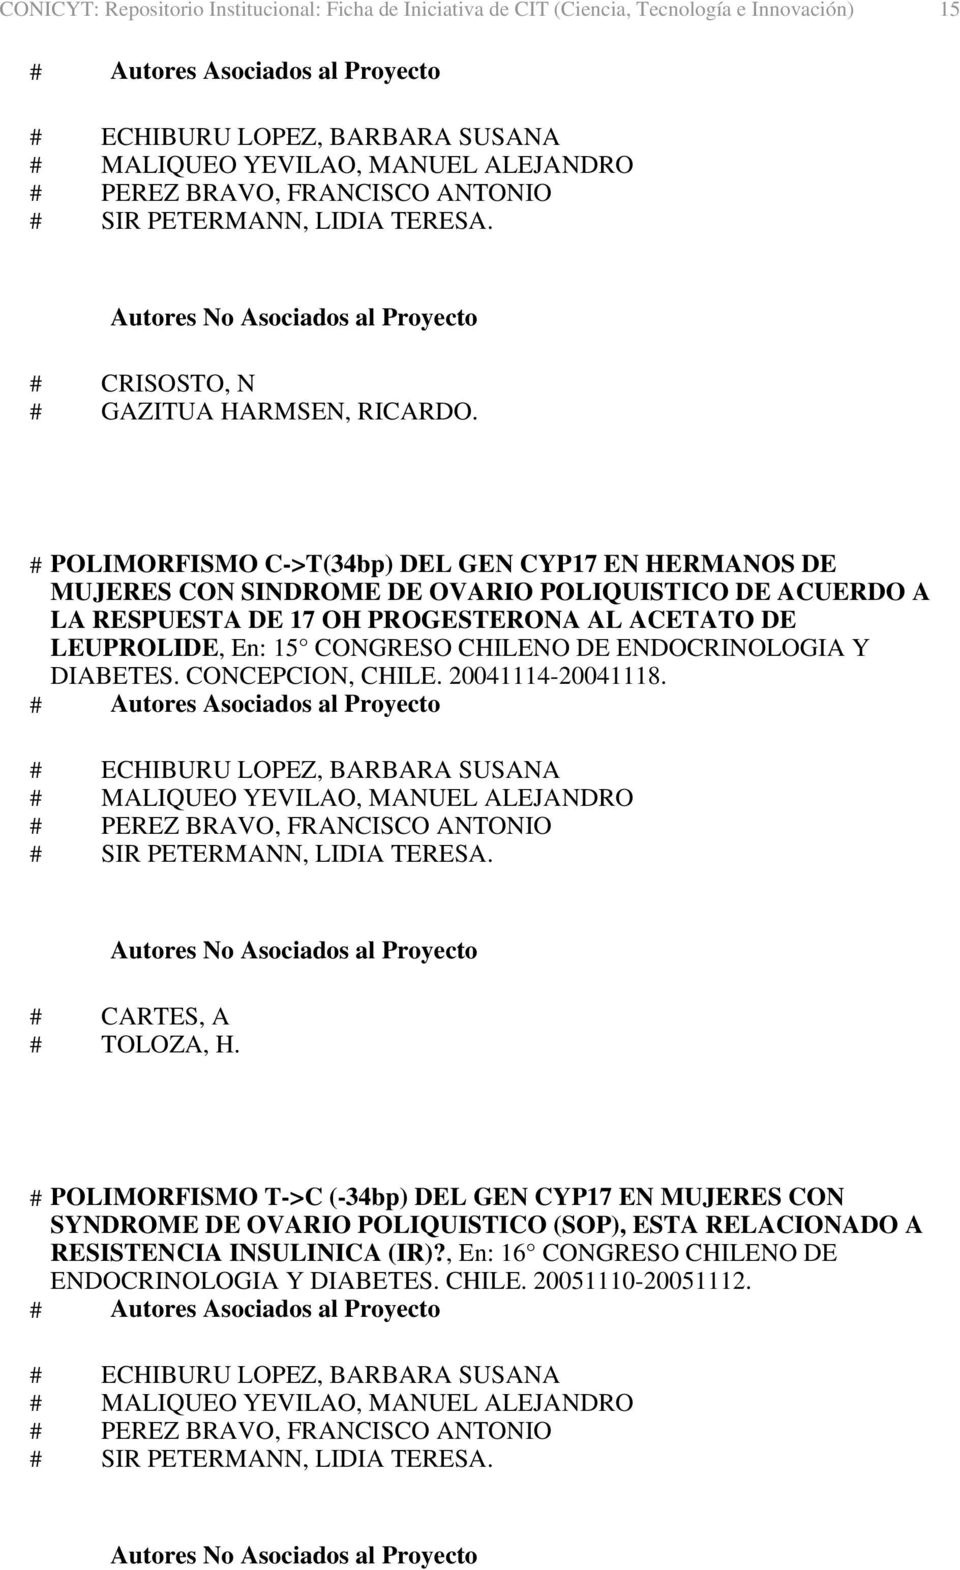 LEUPROLIDE, En: 15 CONGRESO CHILENO DE ENDOCRINOLOGIA Y DIABETES. CONCEPCION, CHILE. 20041114-20041118. # CARTES, A # TOLOZA, H.